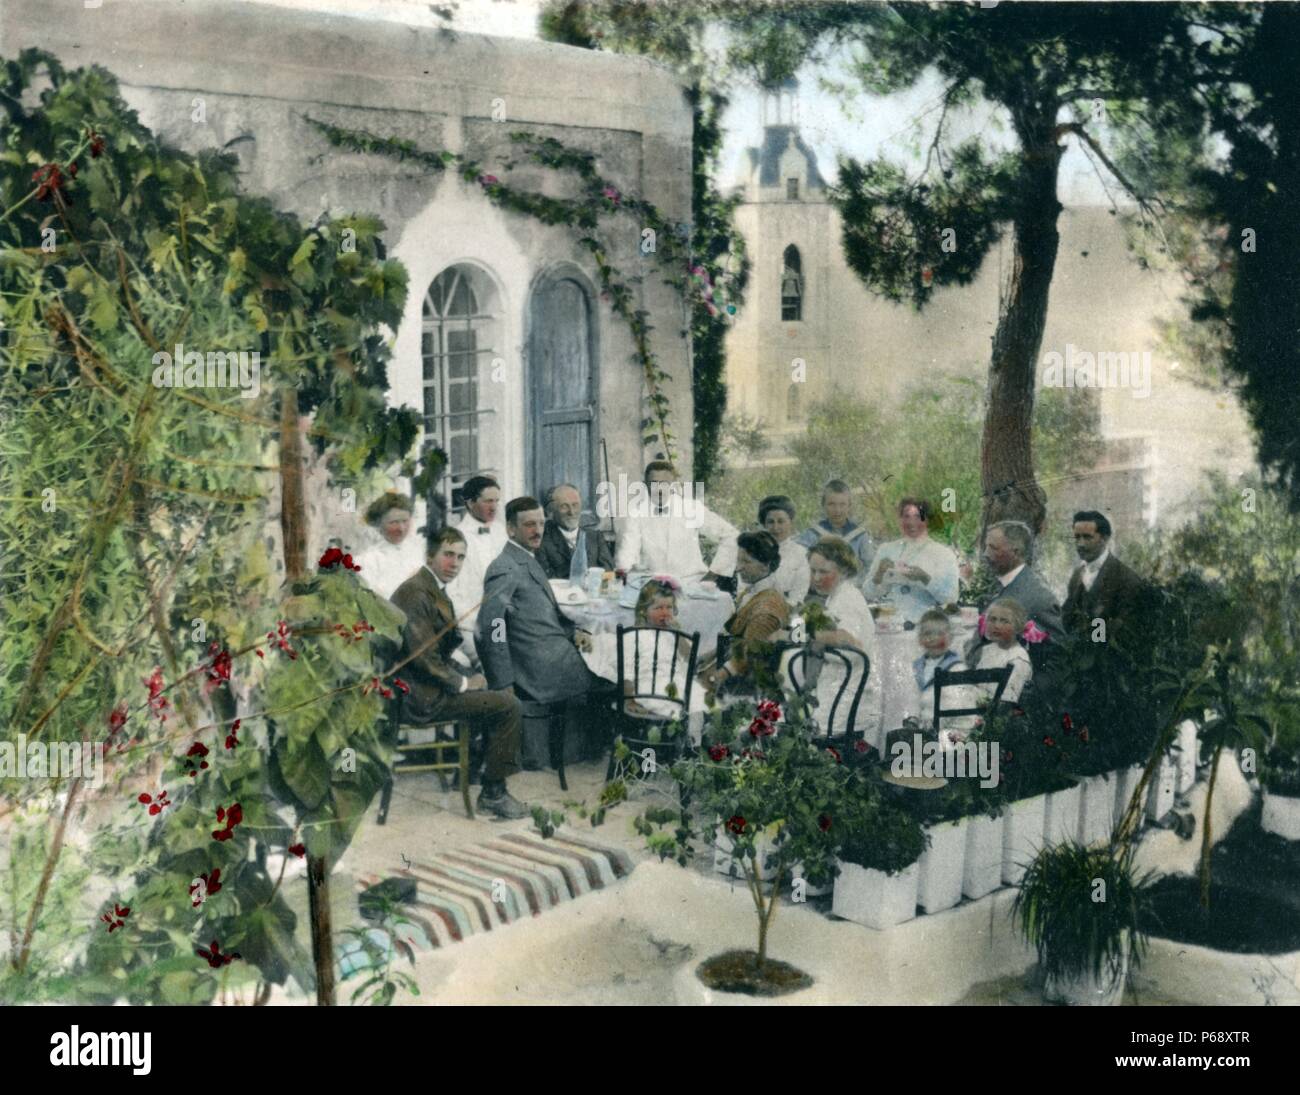 La main, photographie de la colonie américaine établie à Jérusalem par les membres d'une société utopique chrétienne dirigée par Anna et Horatio Spafford. Datée 1919 Banque D'Images